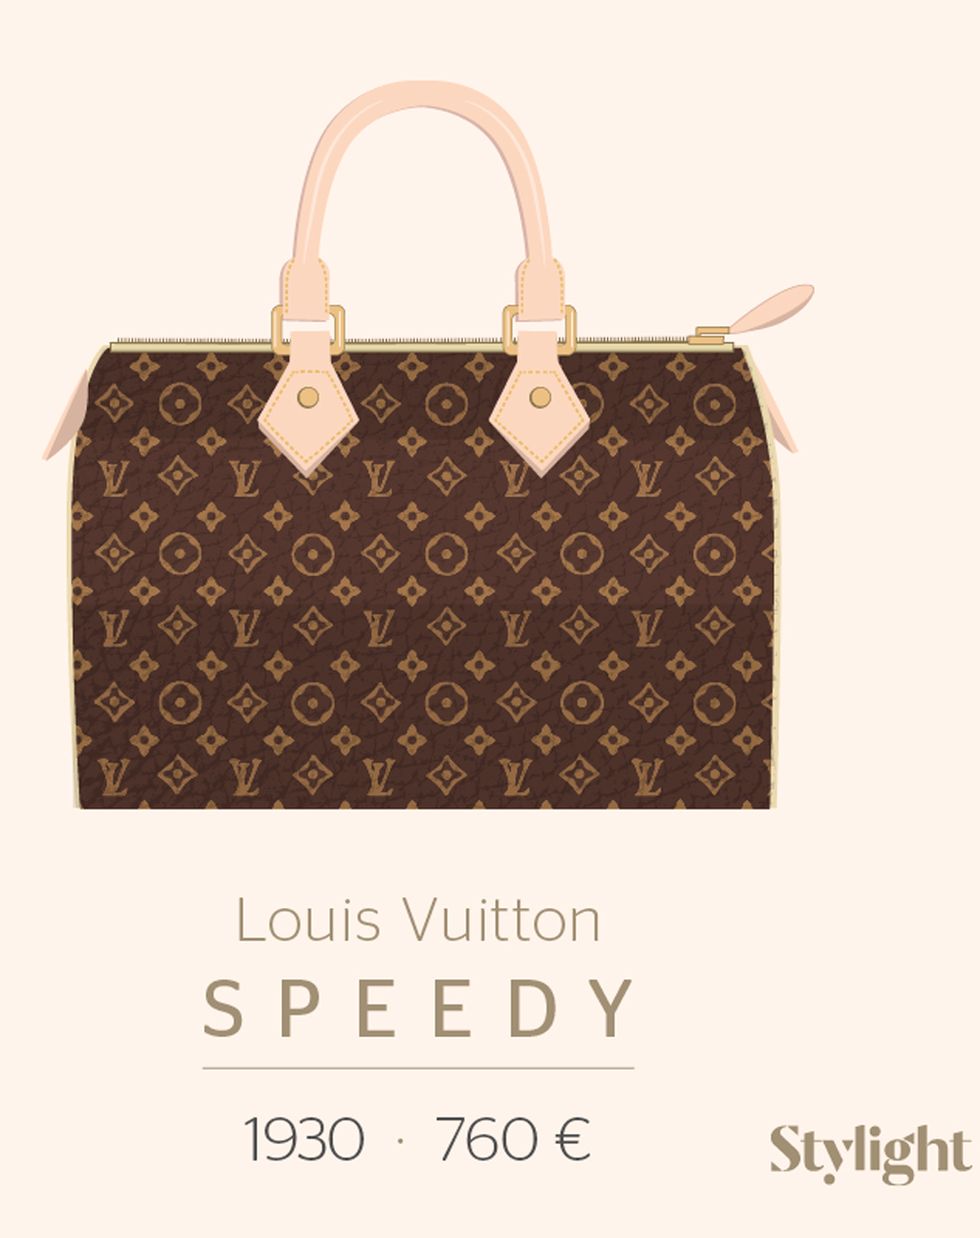 <p>El <strong>Speedy Louis Vuitton</strong> creado por el malletier francés en 1930 con una medida de 30cm, reducido a 25cm en 1965 como encargo especial para Audrey Hepburn.</p>